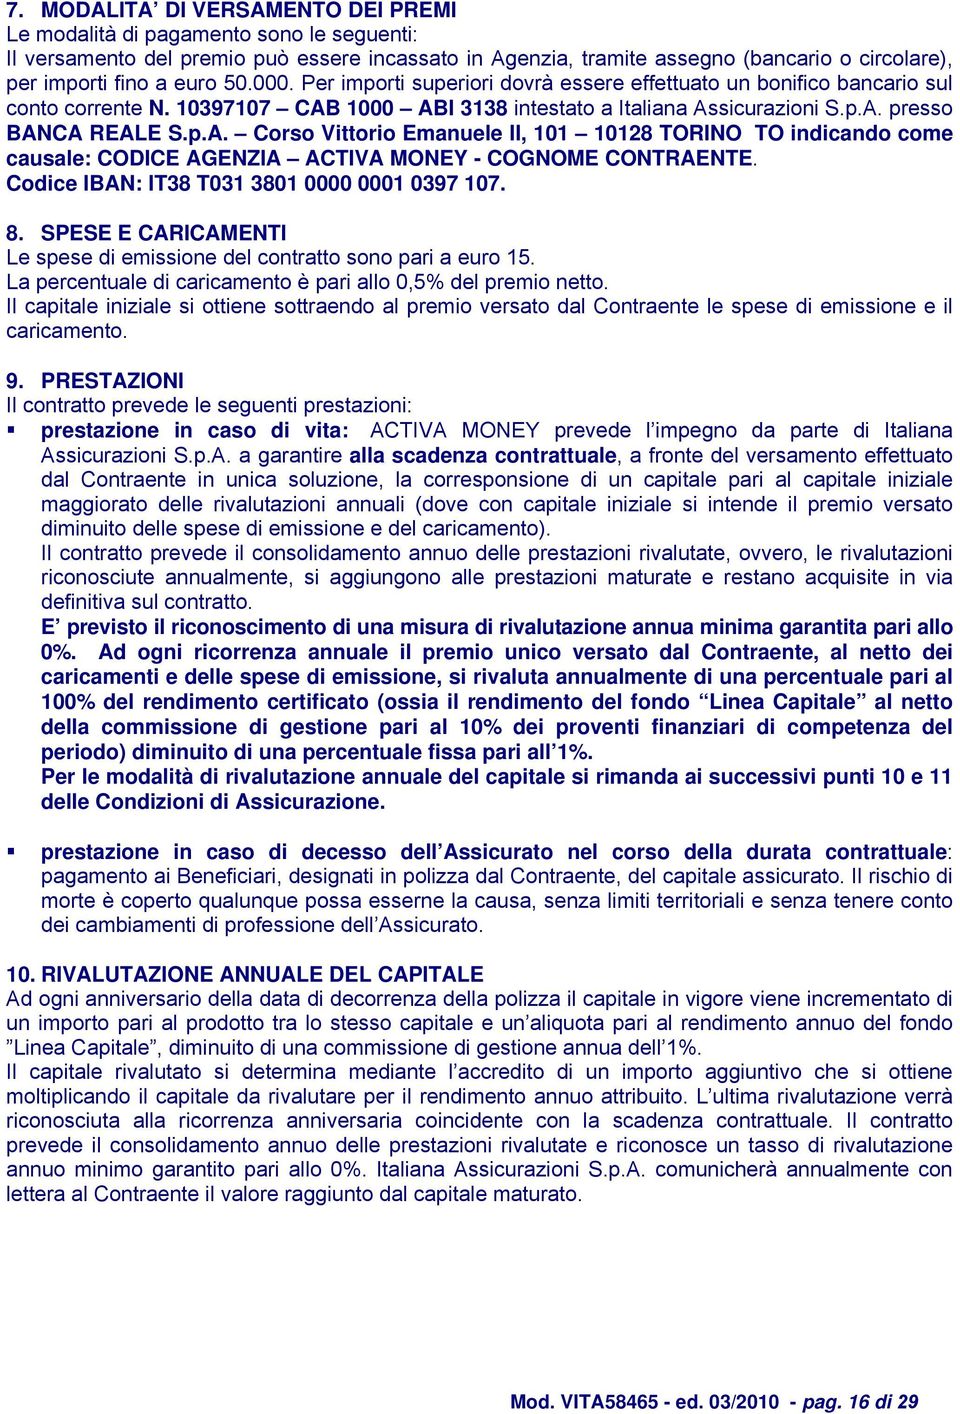 1000 ABI 3138 intestato a Italiana Assicurazioni S.p.A. presso BANCA REALE S.p.A. Corso Vittorio Emanuele II, 101 10128 TORINO TO indicando come causale: CODICE AGENZIA ACTIVA MONEY - COGNOME CONTRAENTE.